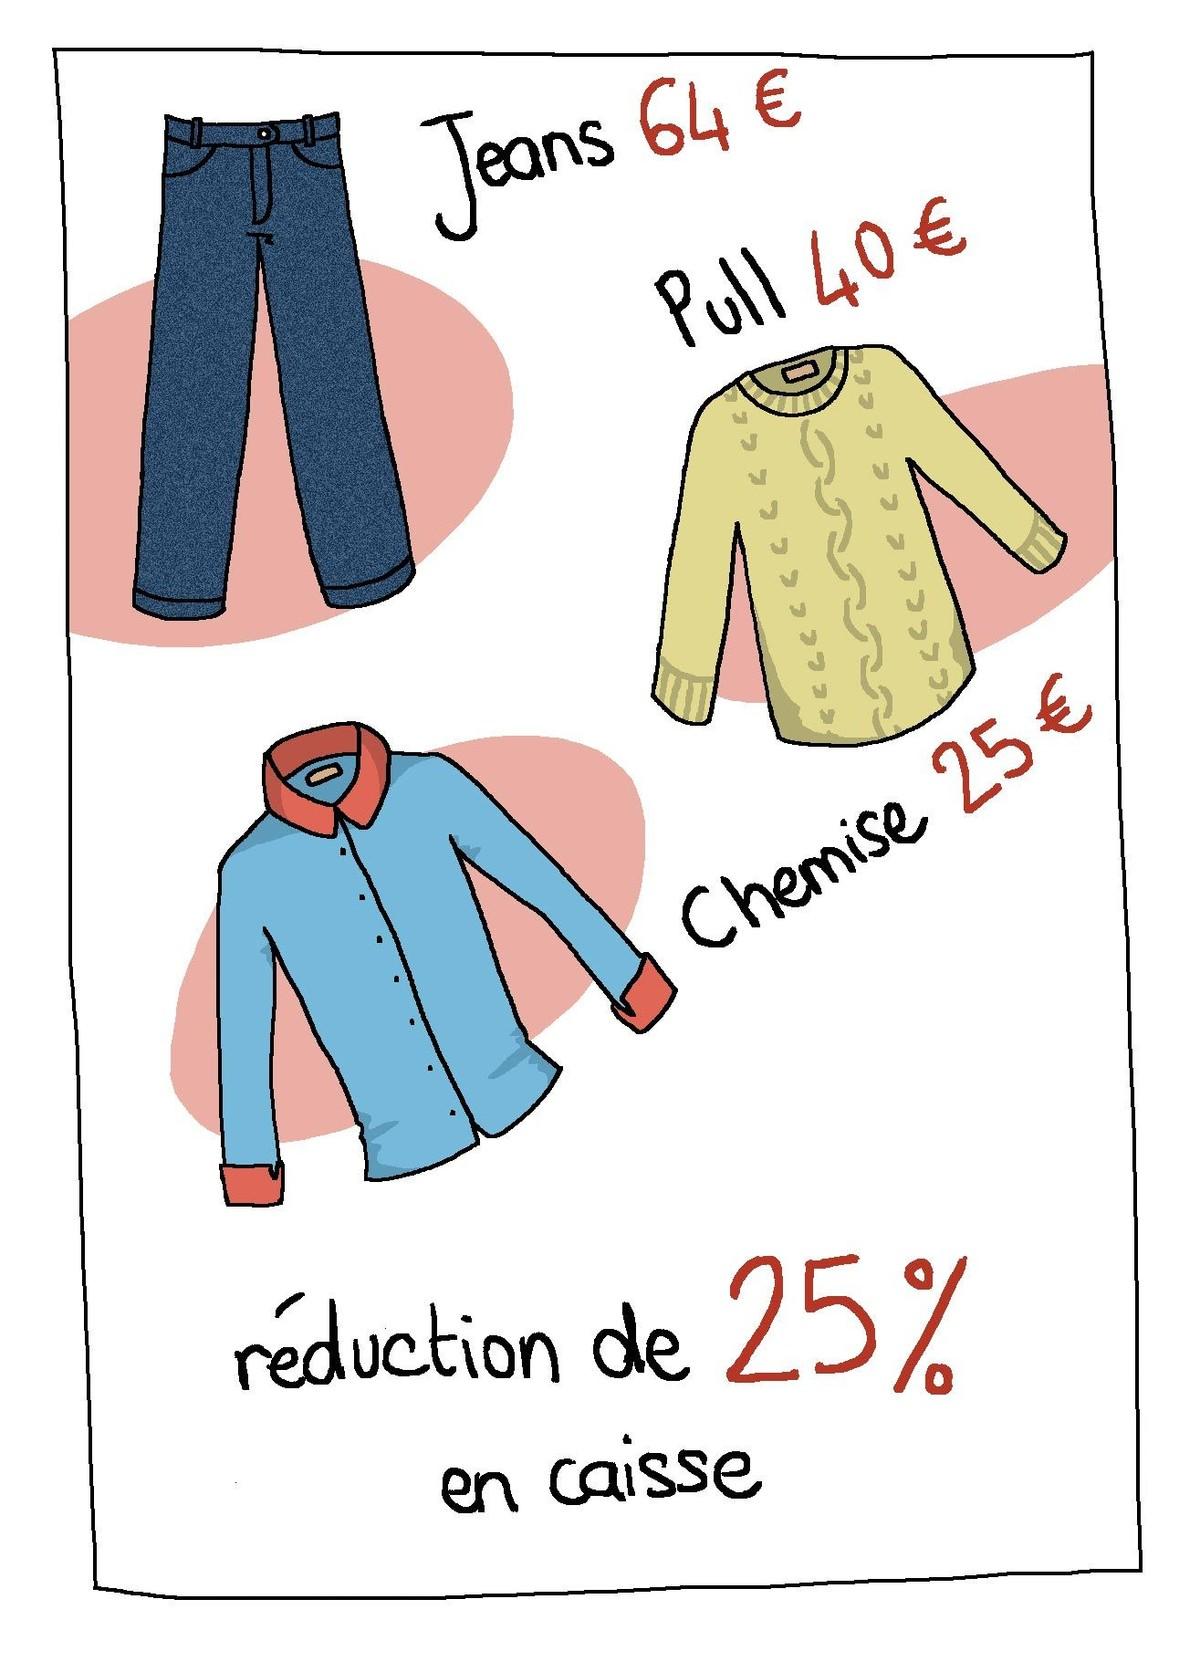 Affiche représentant un jean à 64 euros, un pull à 40 euros et une chemise à 25 euros, exprimant une réduction de 25%. 